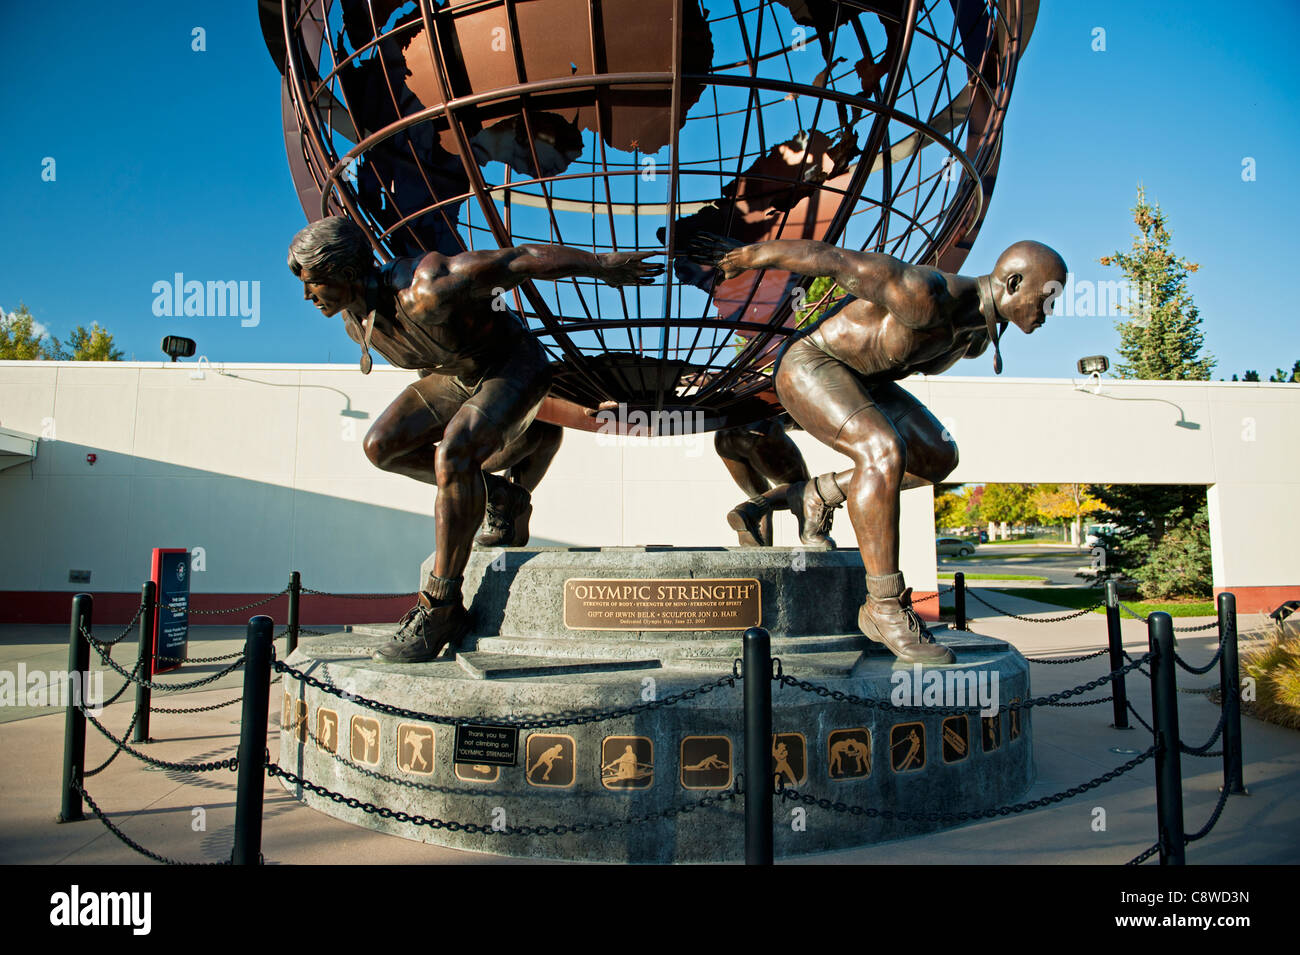 'Fortaleza' una escultura Olímpica por Jon D. pelo delante del Centro de Entrenamiento Olímpico de Estados Unidos, Colorado Springs, Colorado Foto de stock